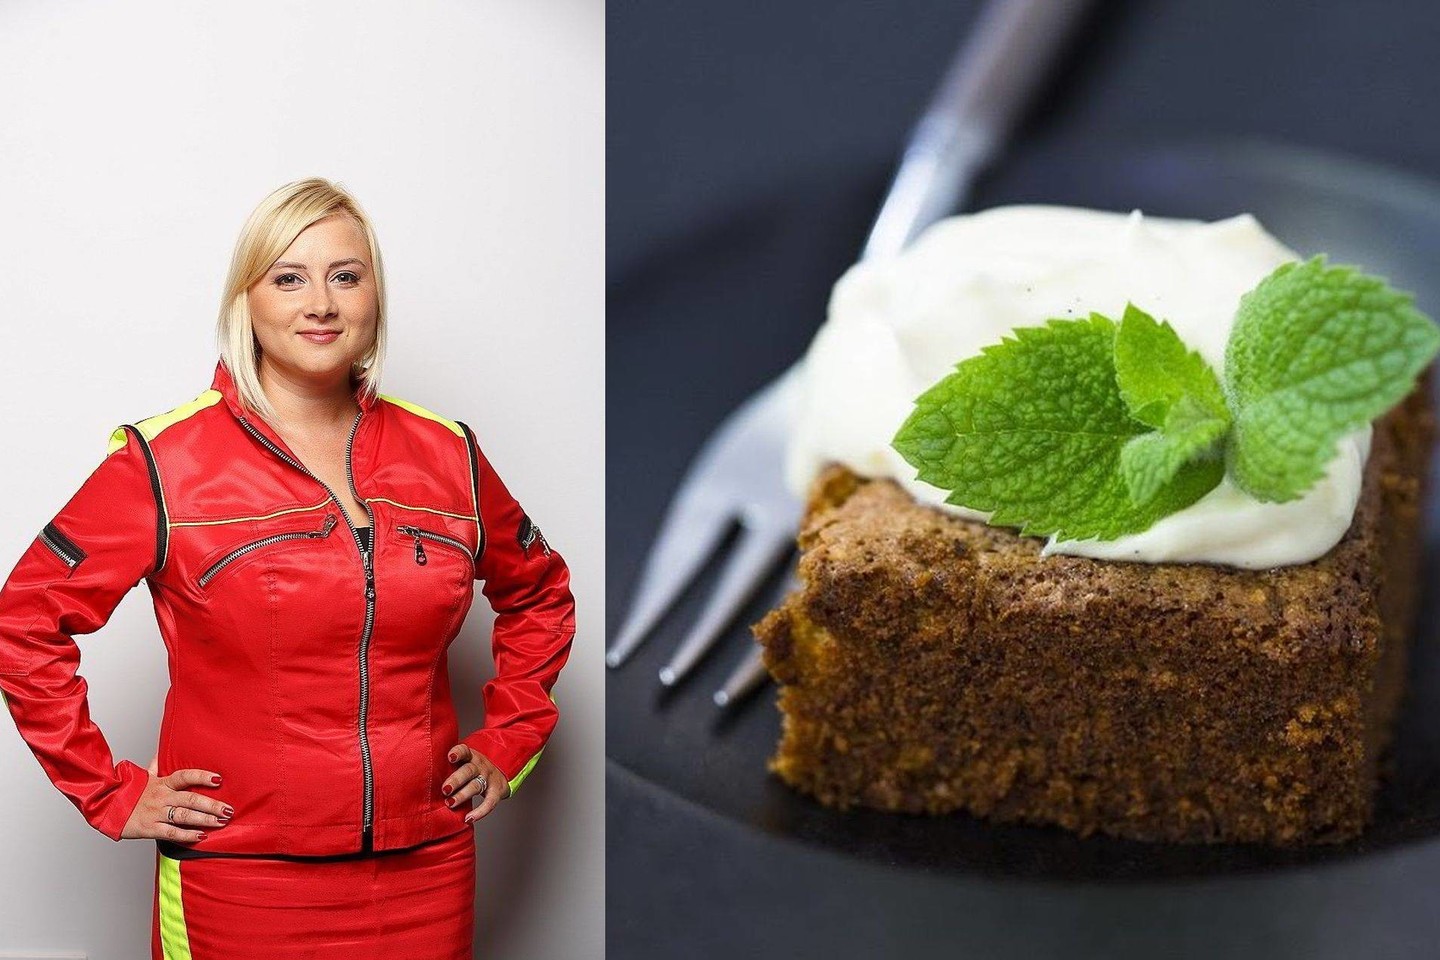 Morkų pyragas, kurį kartu su virtuvės meistru Deividu Praspaliausku studijoje iškepė Sandra, buvo trečias jos gyvenime keptas ir pavykęs desertas.<br>TV3 nuotr.